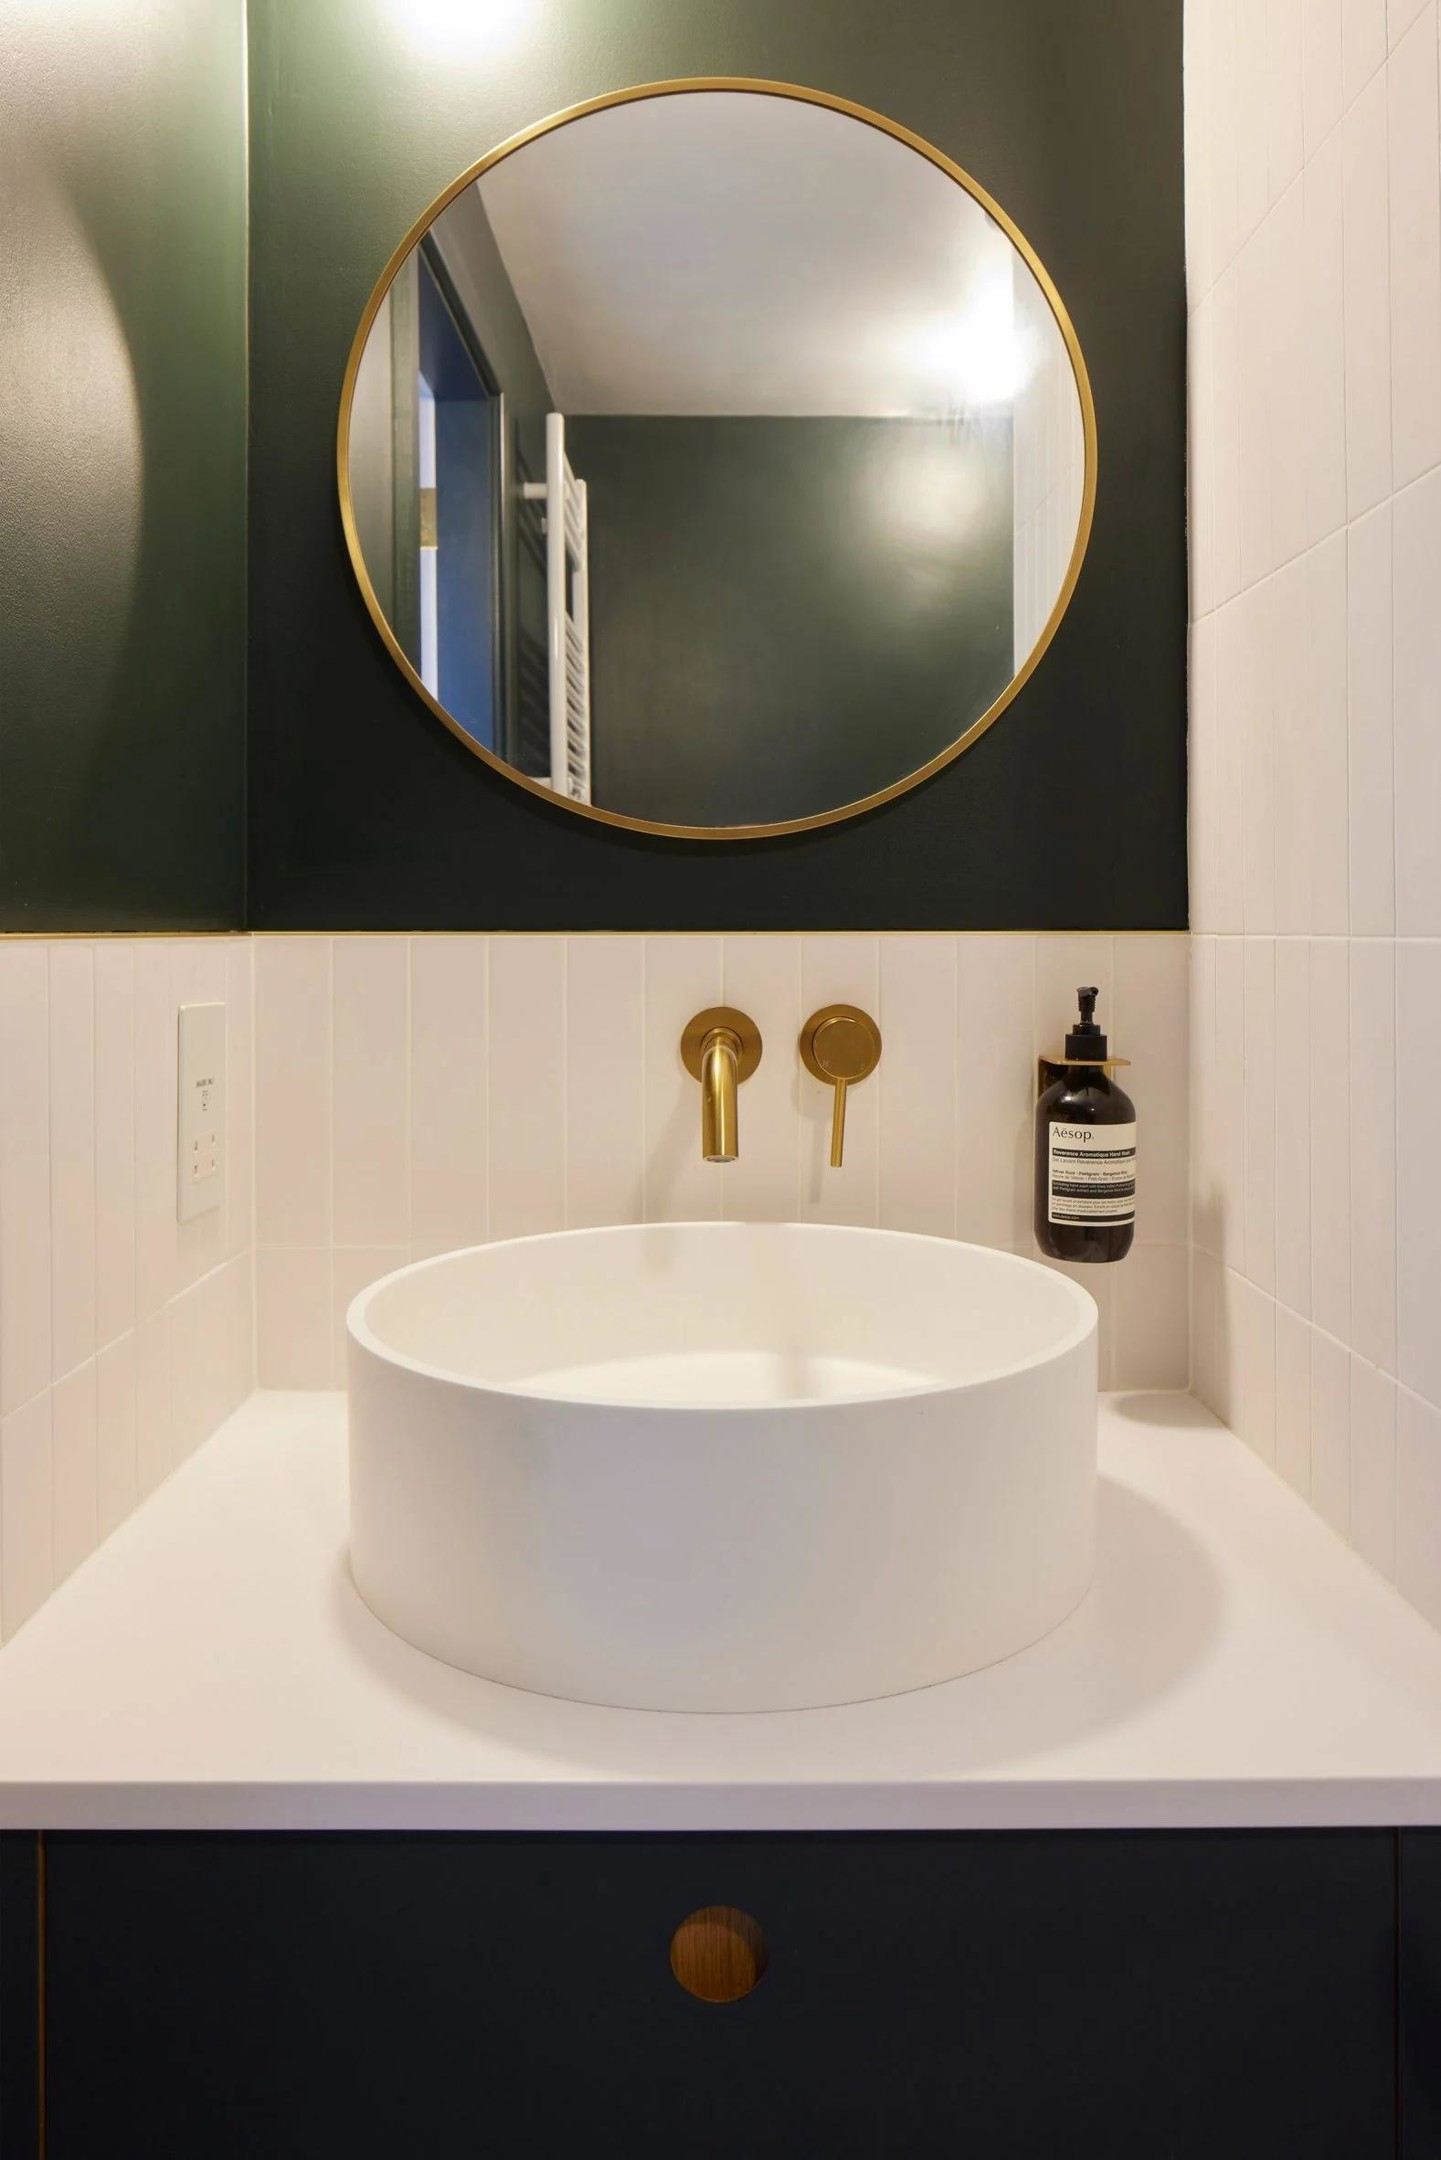 Và cuối cùng là không gian phòng tắm với điểm nhấn là bức tường sơn màu xanh rêu đậm, kết hợp những chi tiết bằng kim loại mạ vàng đồng như viền khung gương soi, vòi rửa tay,... nơi bồn rửa.